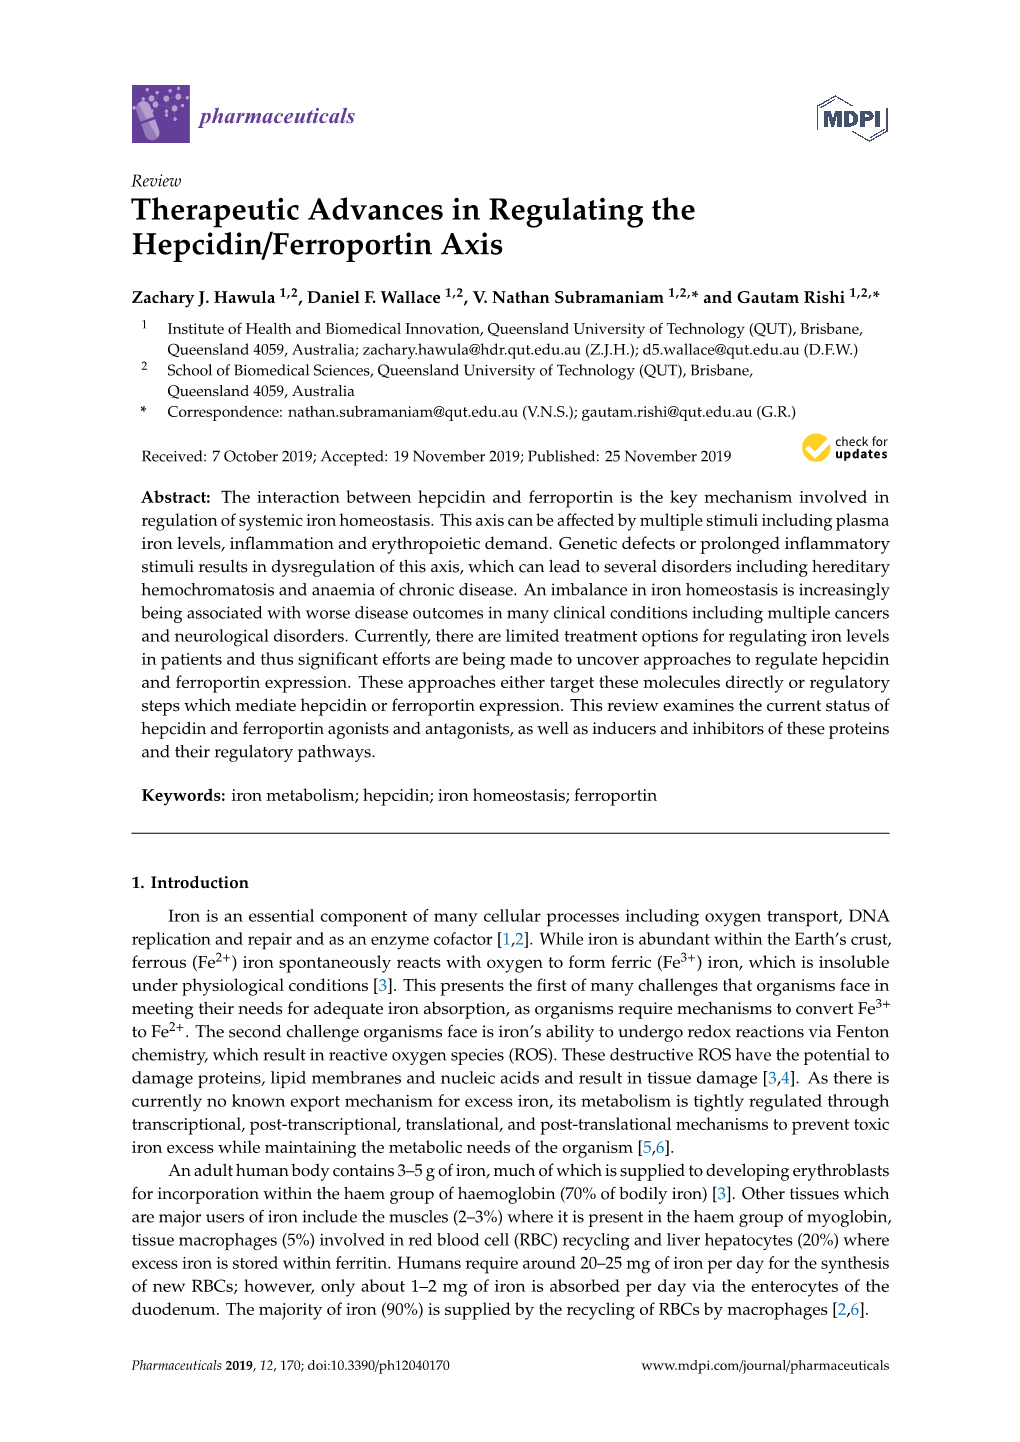 Therapeutic Advances in Regulating the Hepcidin/Ferroportin Axis